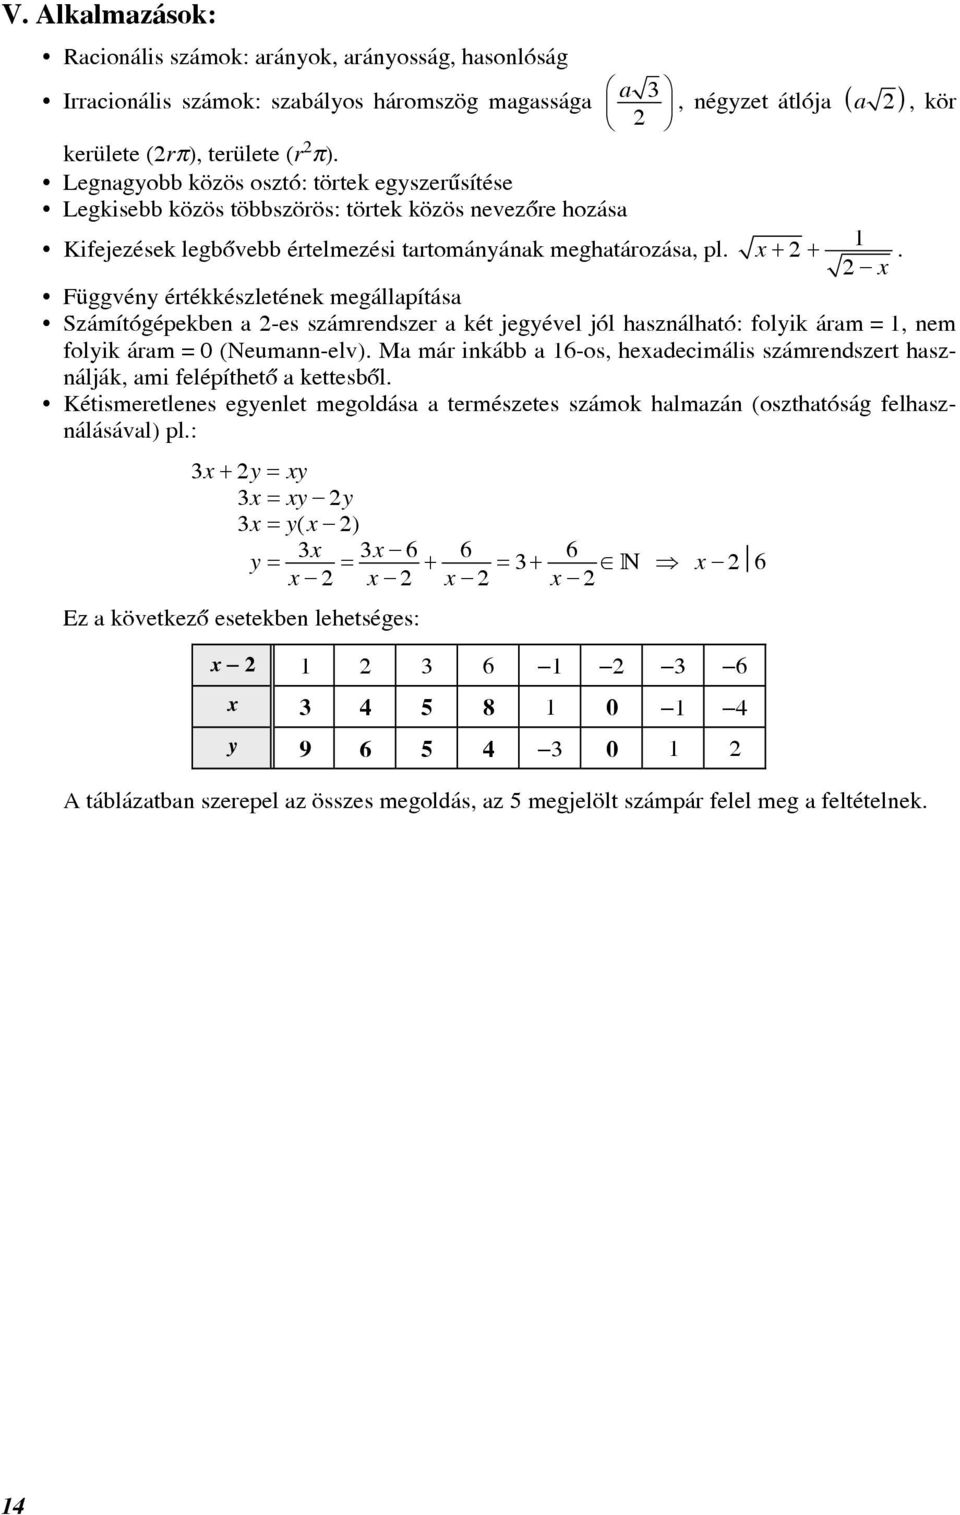 , négyzet átlója ( a ), kör x + + 1 x. Függvény értékkészletének megállapítása Számítógépekben a -es számrendszer a két jegyével jól használható: folyik áram = 1, nem folyik áram = 0 (Neumann-elv).